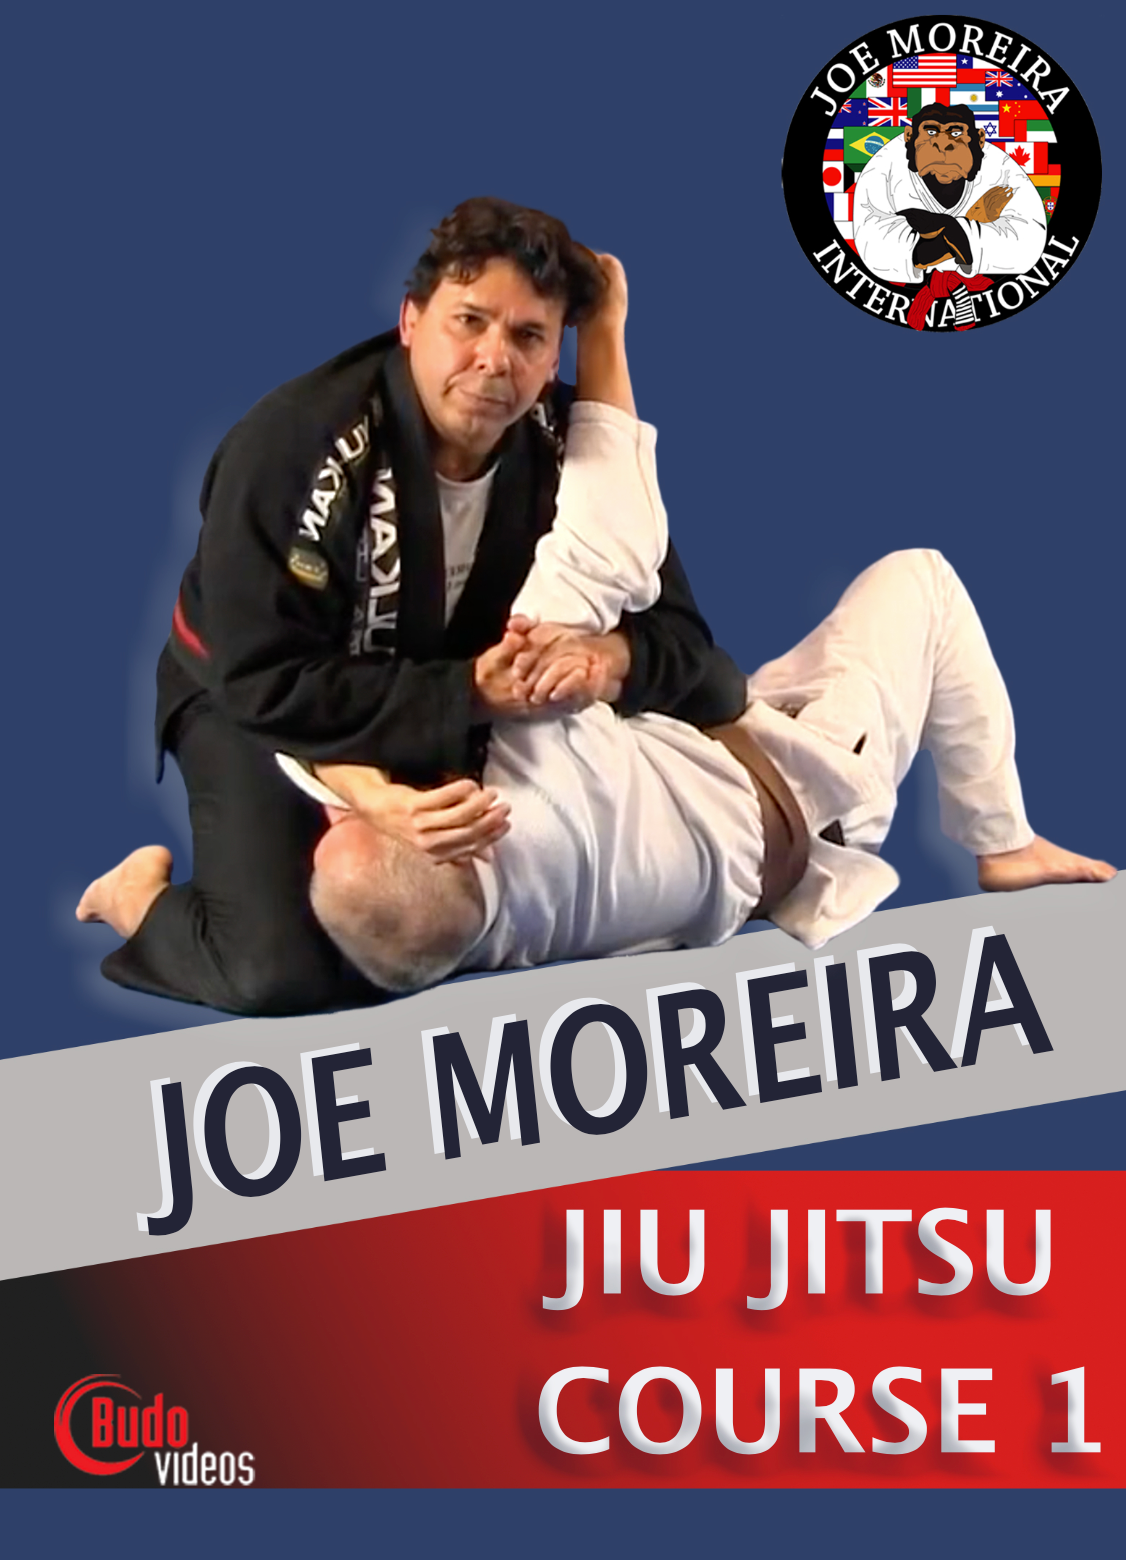 ジョー モレイラ柔術コース 1 (6 DVD セット) 